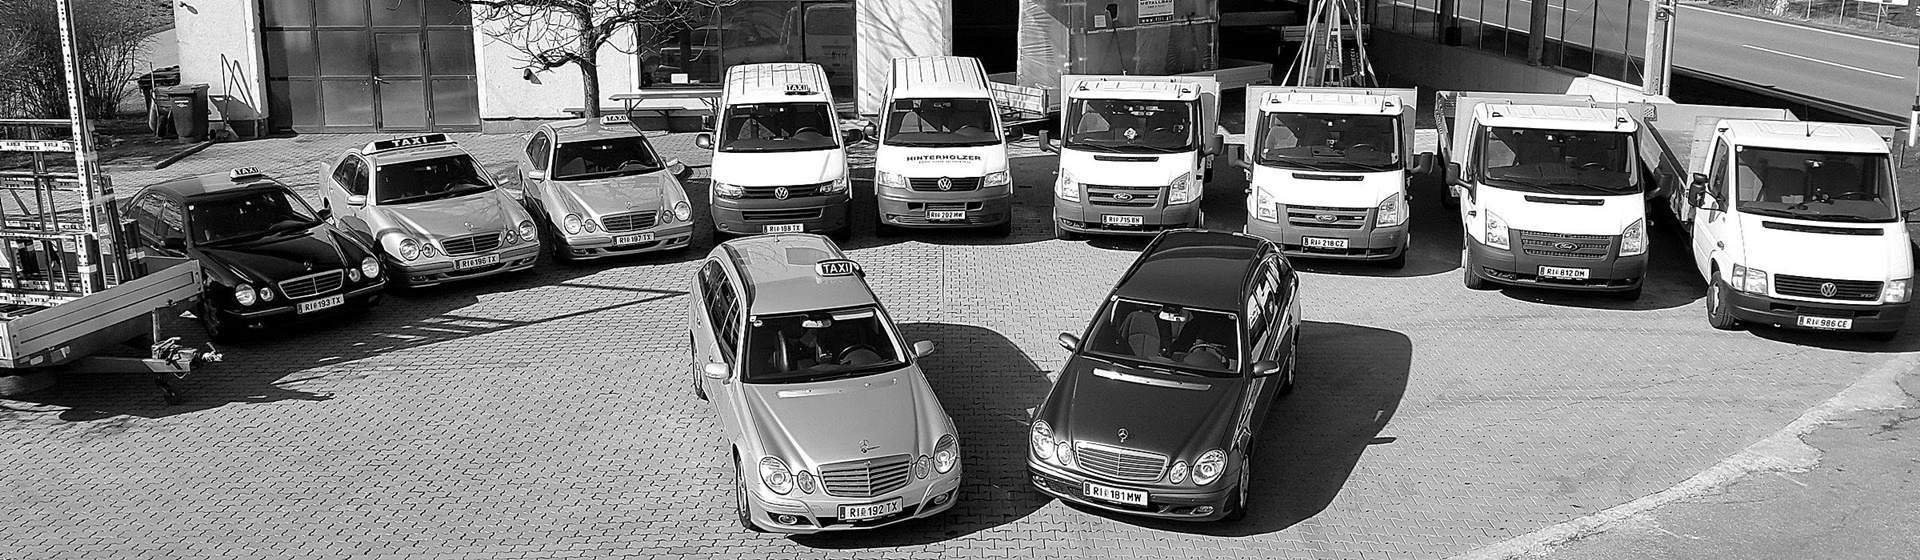 Hinterholzer Taxi & Transporte